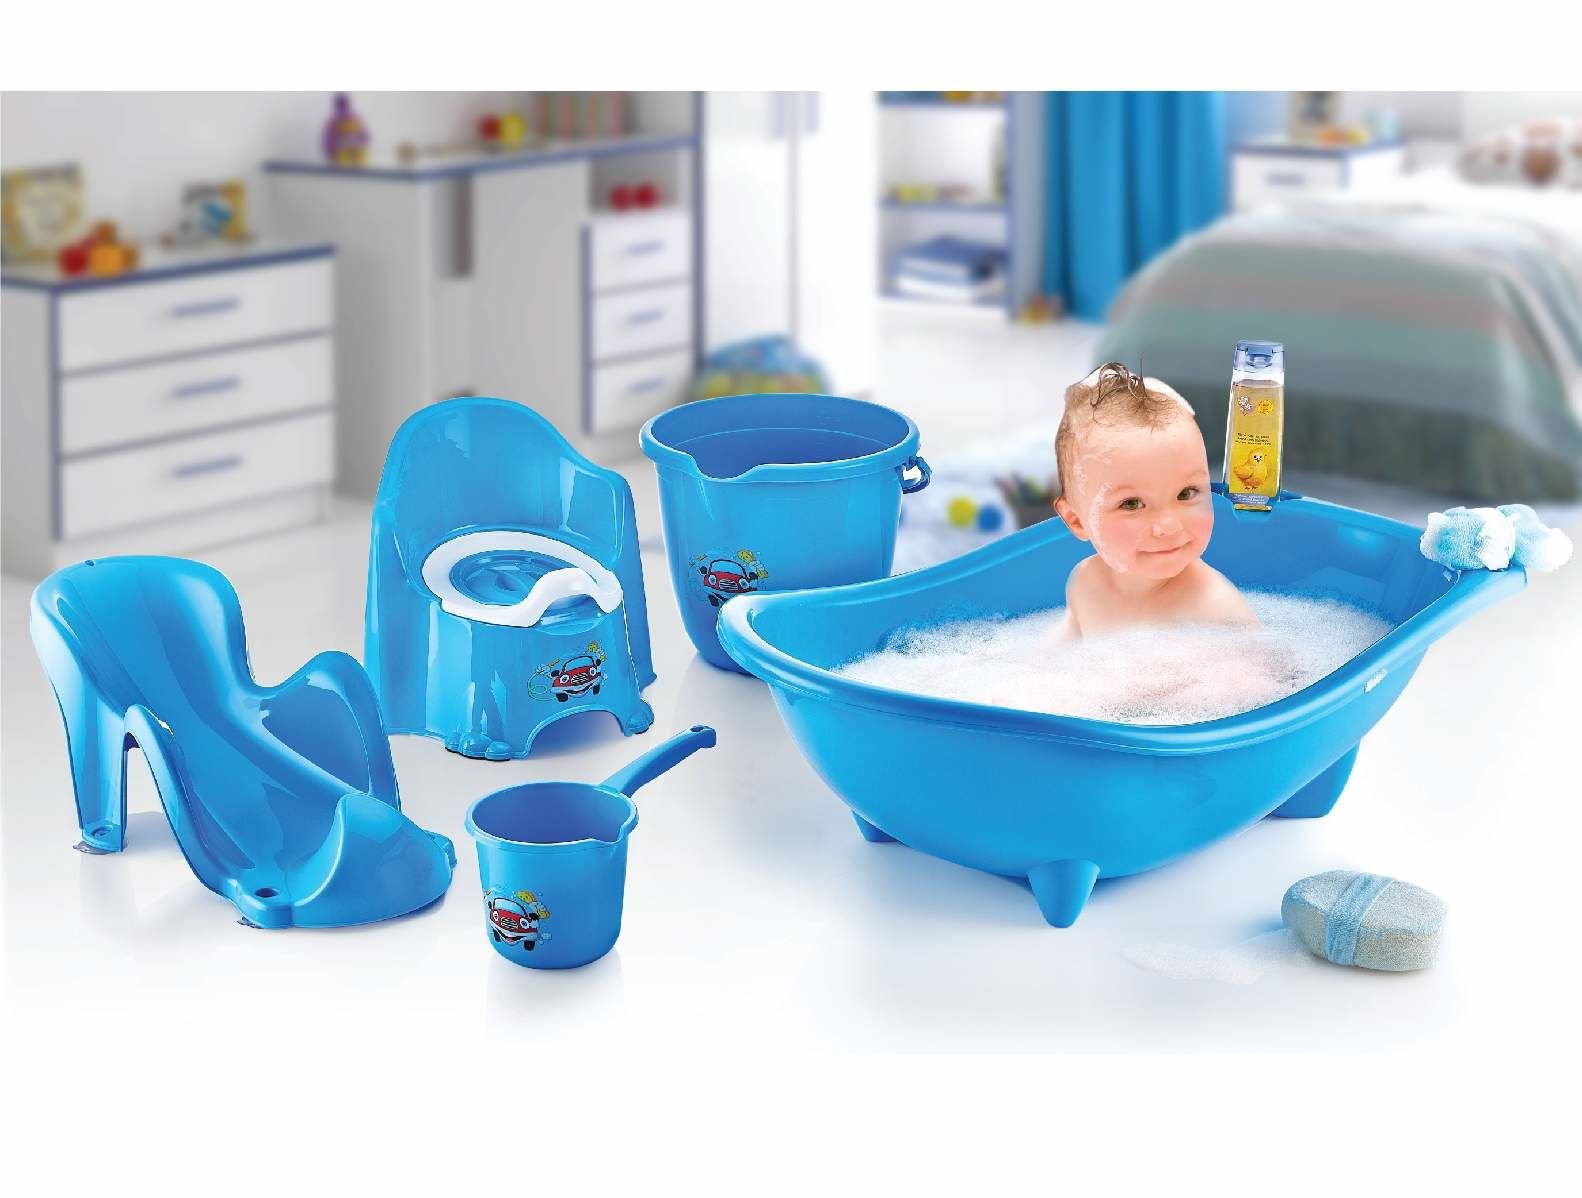 5 Parça Oturaklı Bebek Bakım Yıkama Seti Mavi